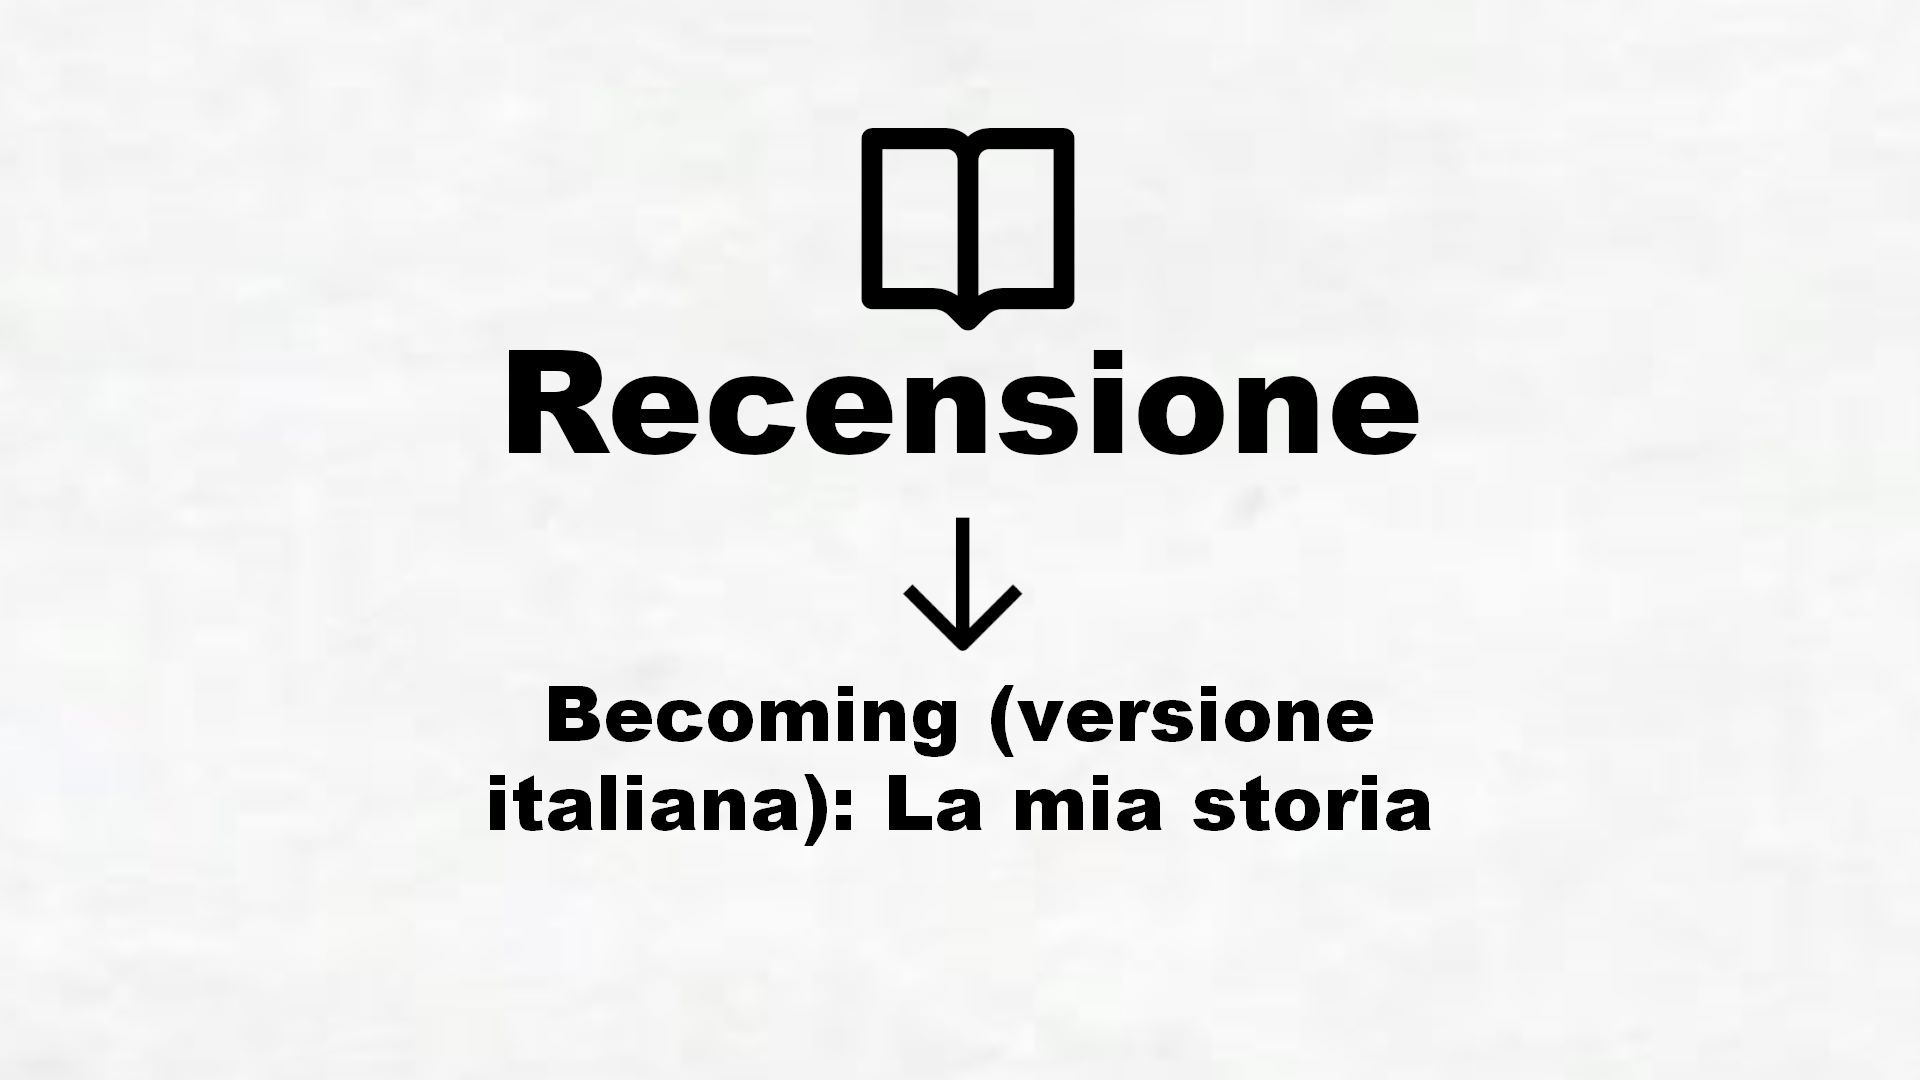 Becoming (versione italiana): La mia storia – Recensione Libro